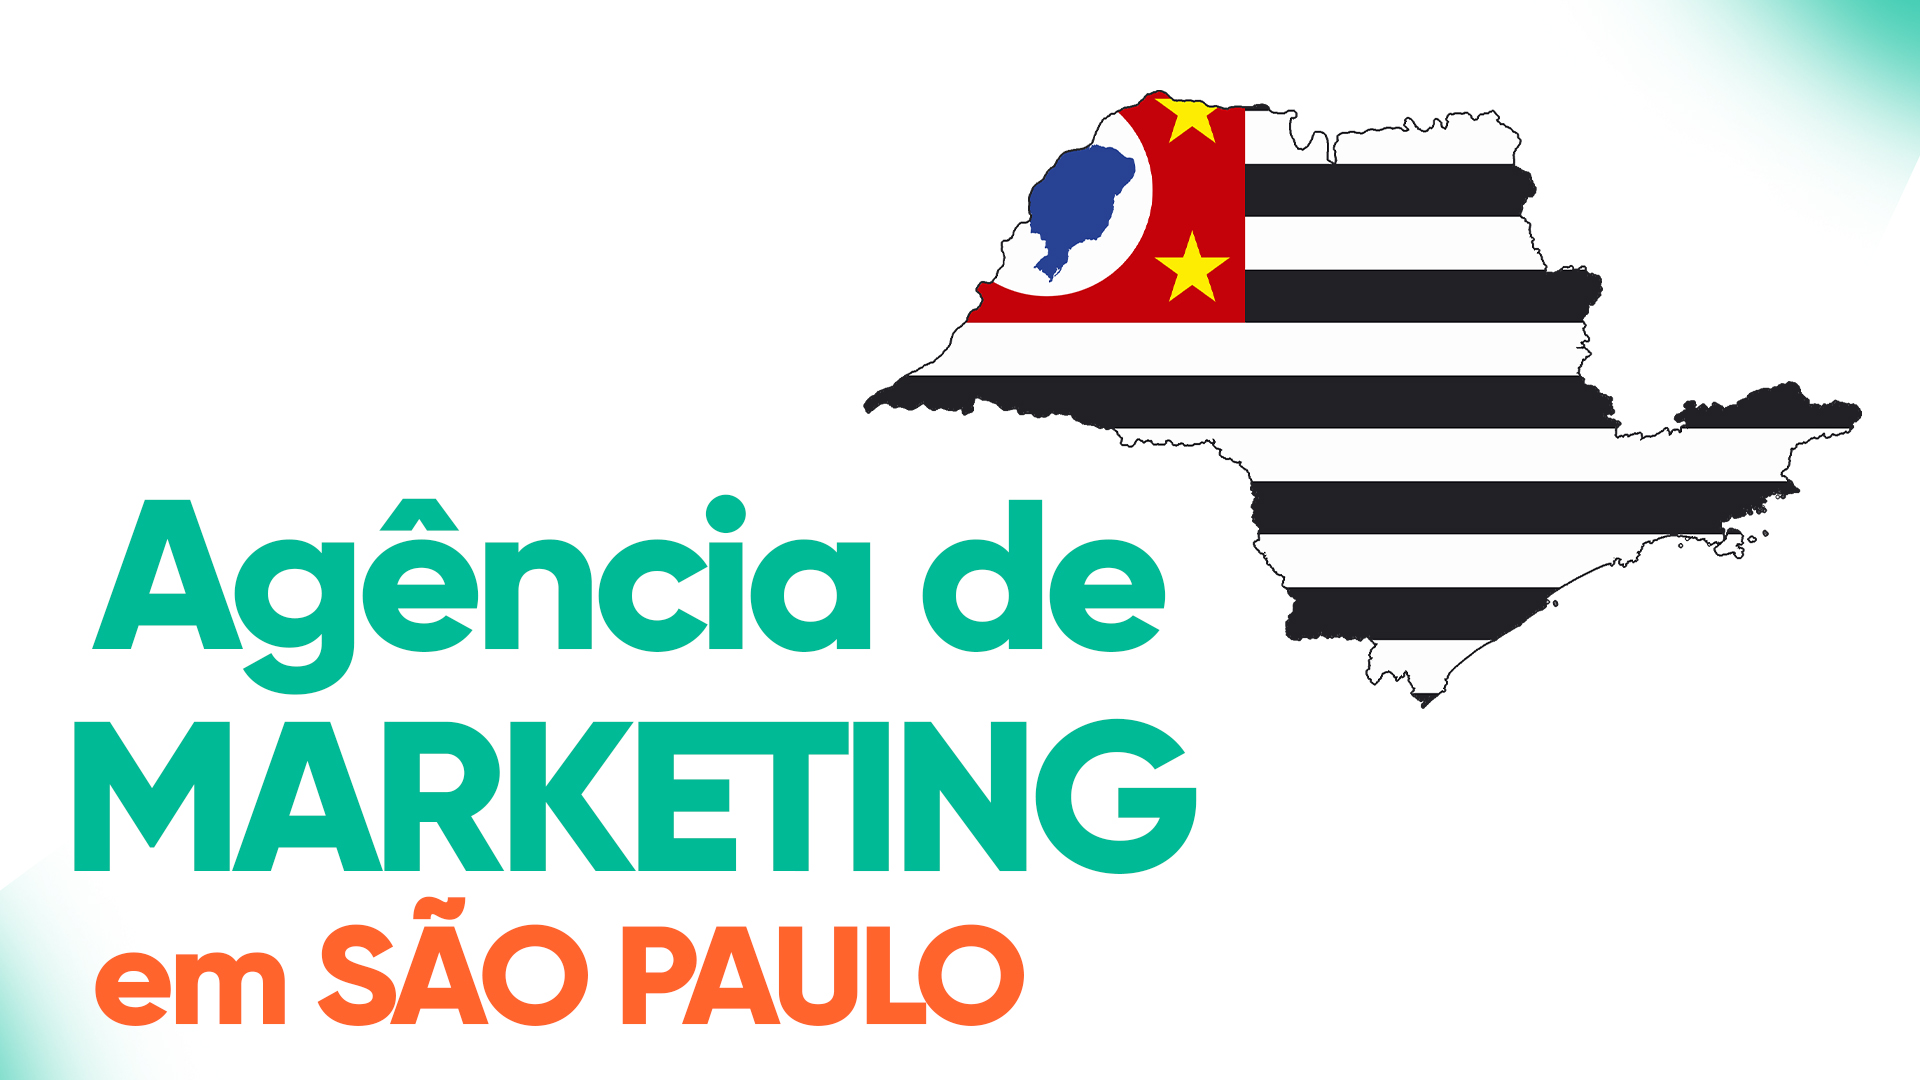 Agência de Marketing em São Paulo: O sucesso da AGNC Marketing e Publicidade